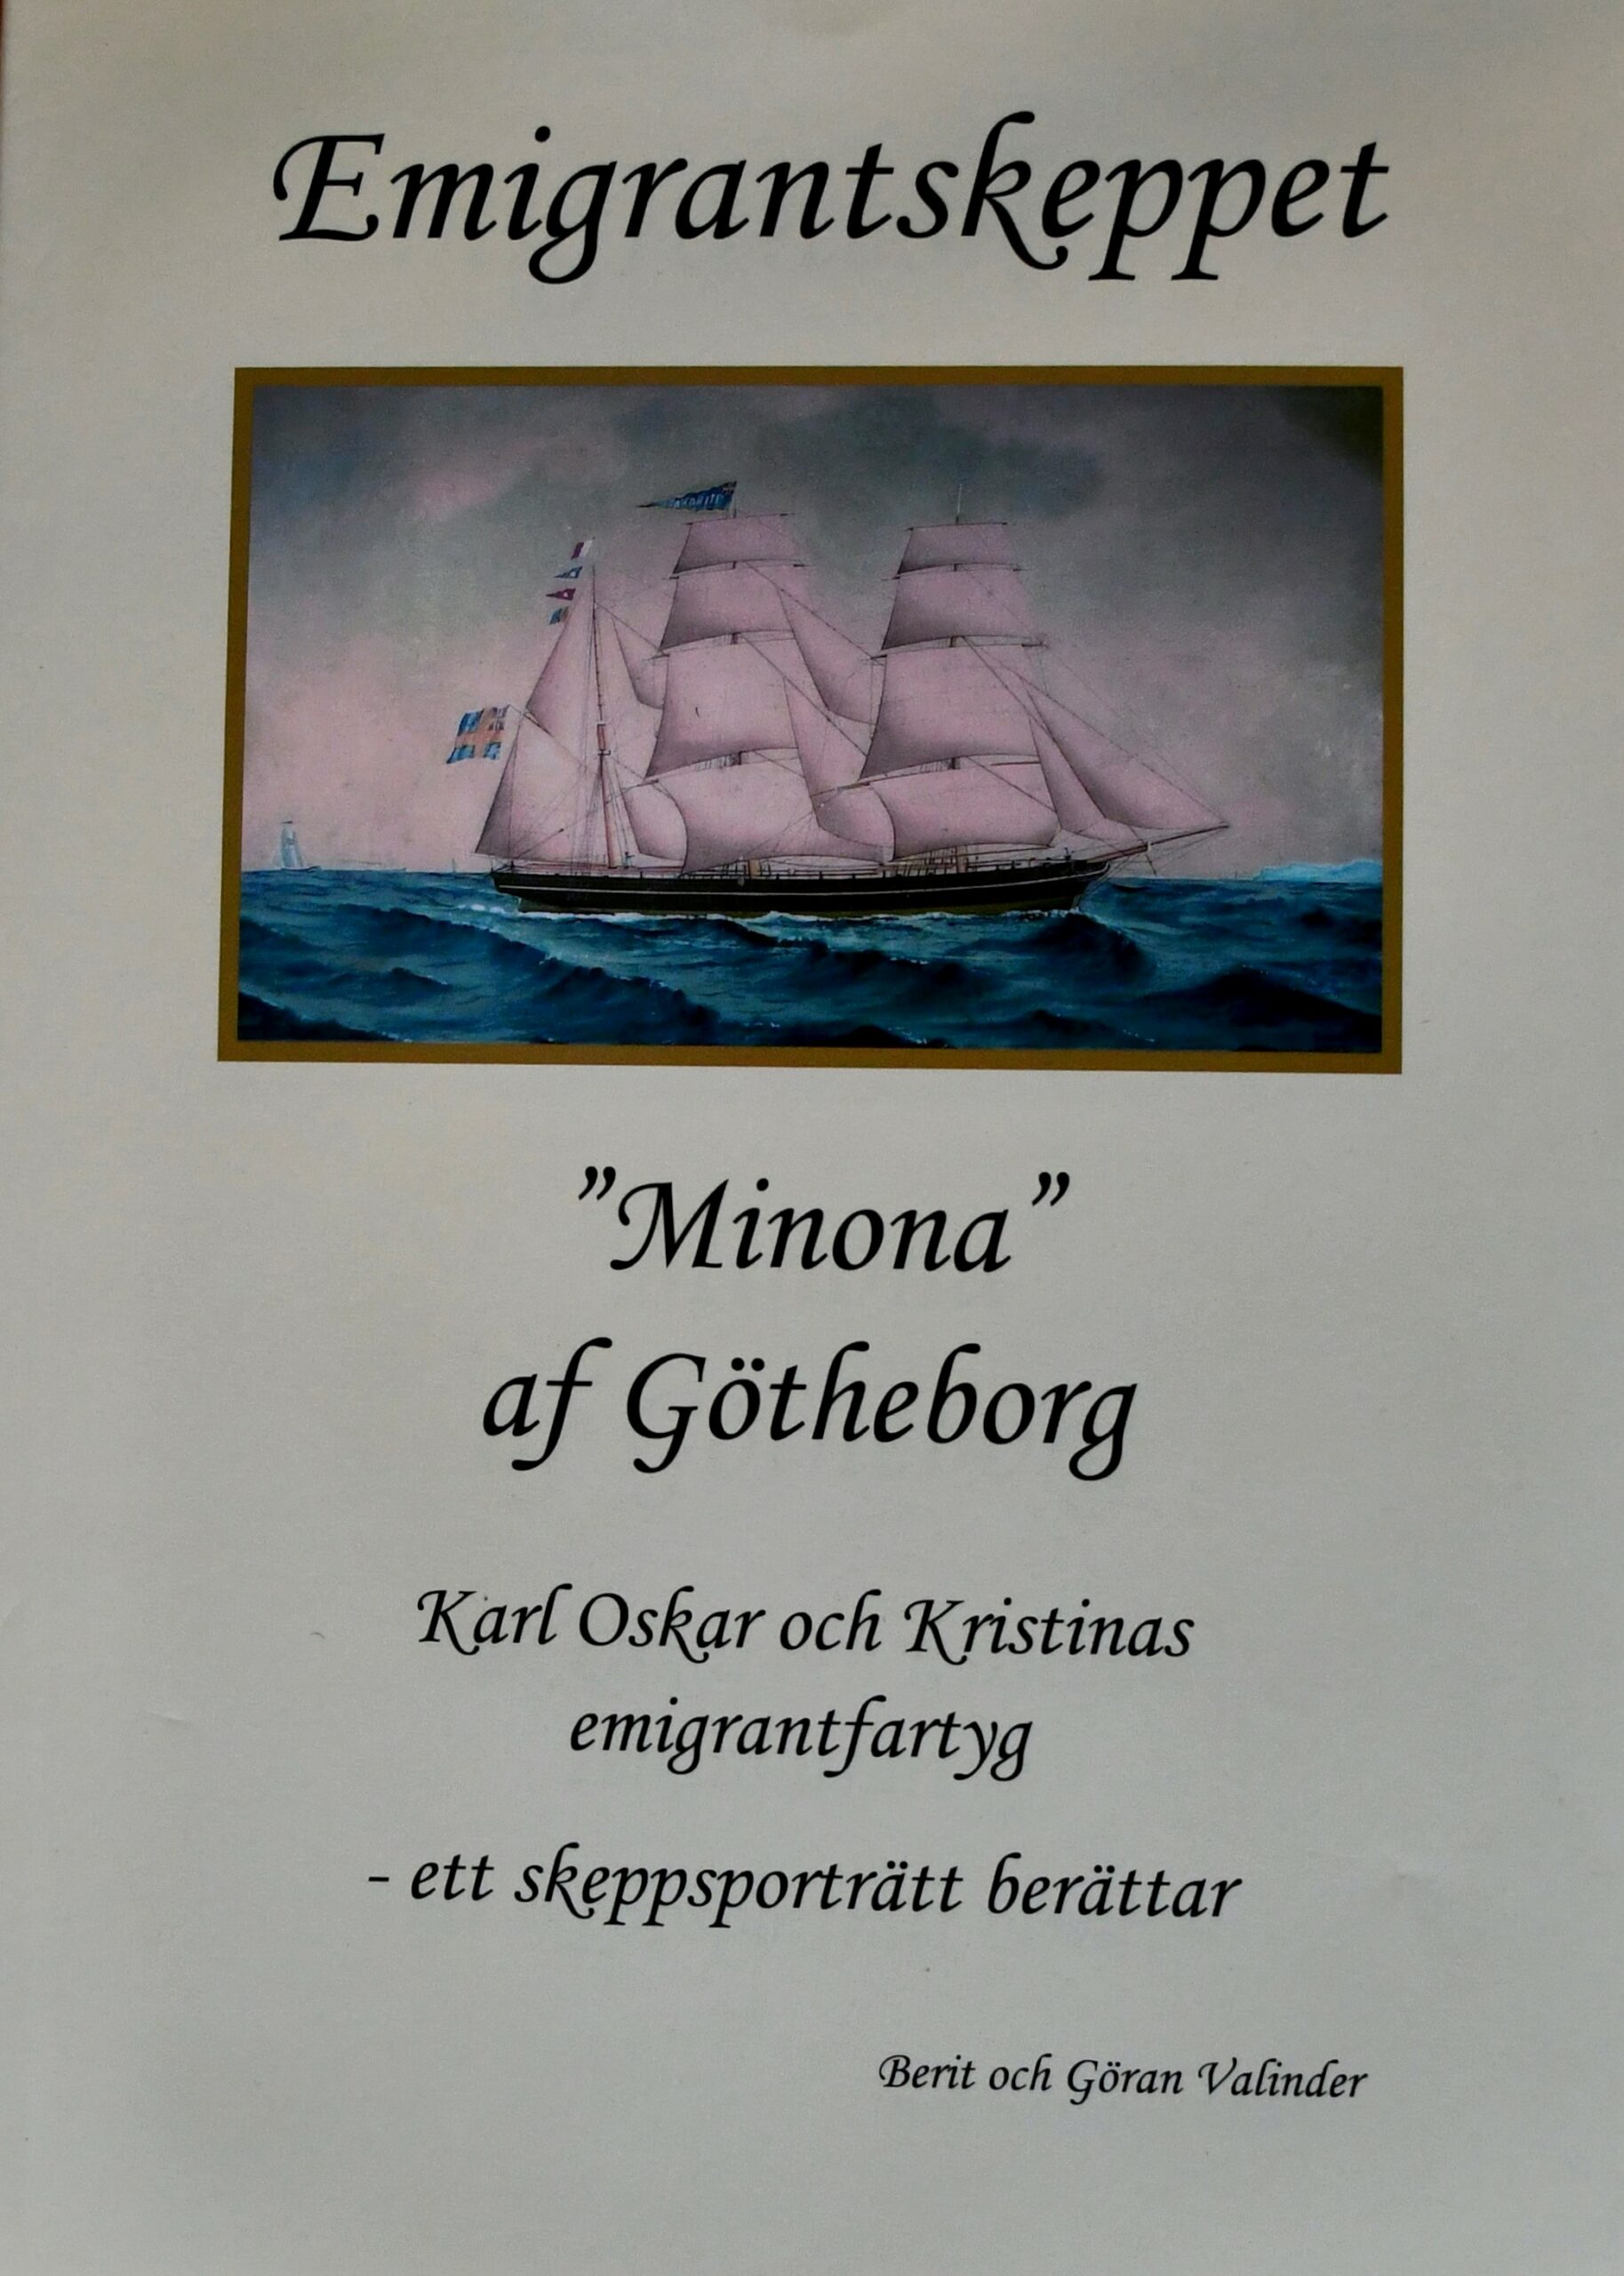 Emigrantskeppet Minona af Göteborg - ett skeppsporträtt berättar